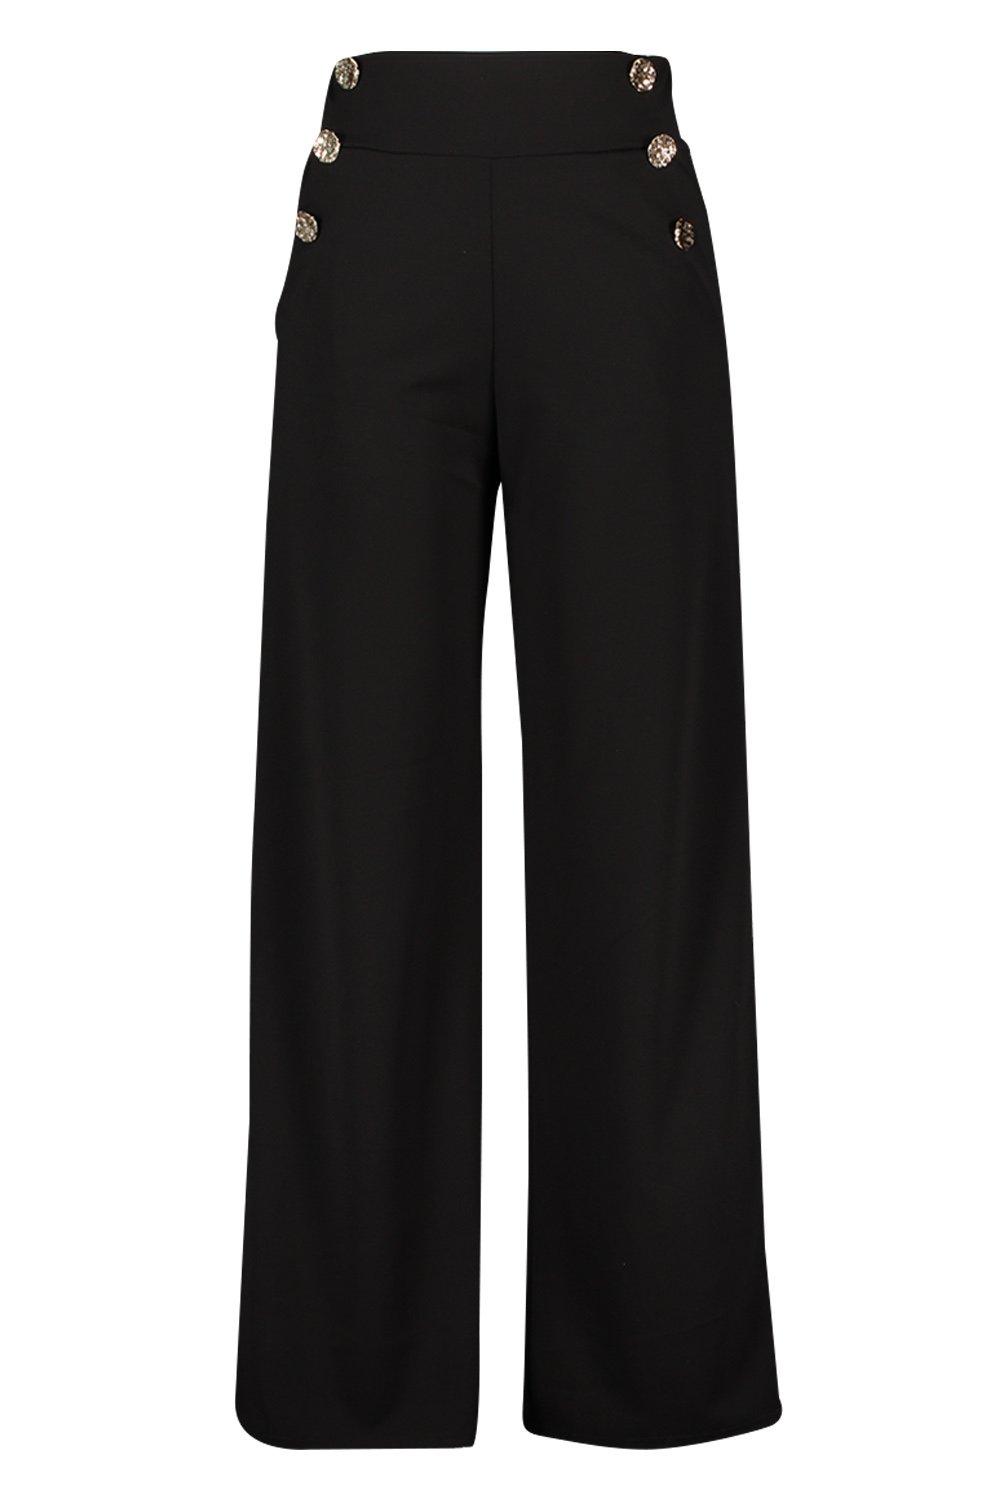  Pantalones para mujer de cintura alta con detalle de botones  (color negro, talla: S) : Ropa, Zapatos y Joyería